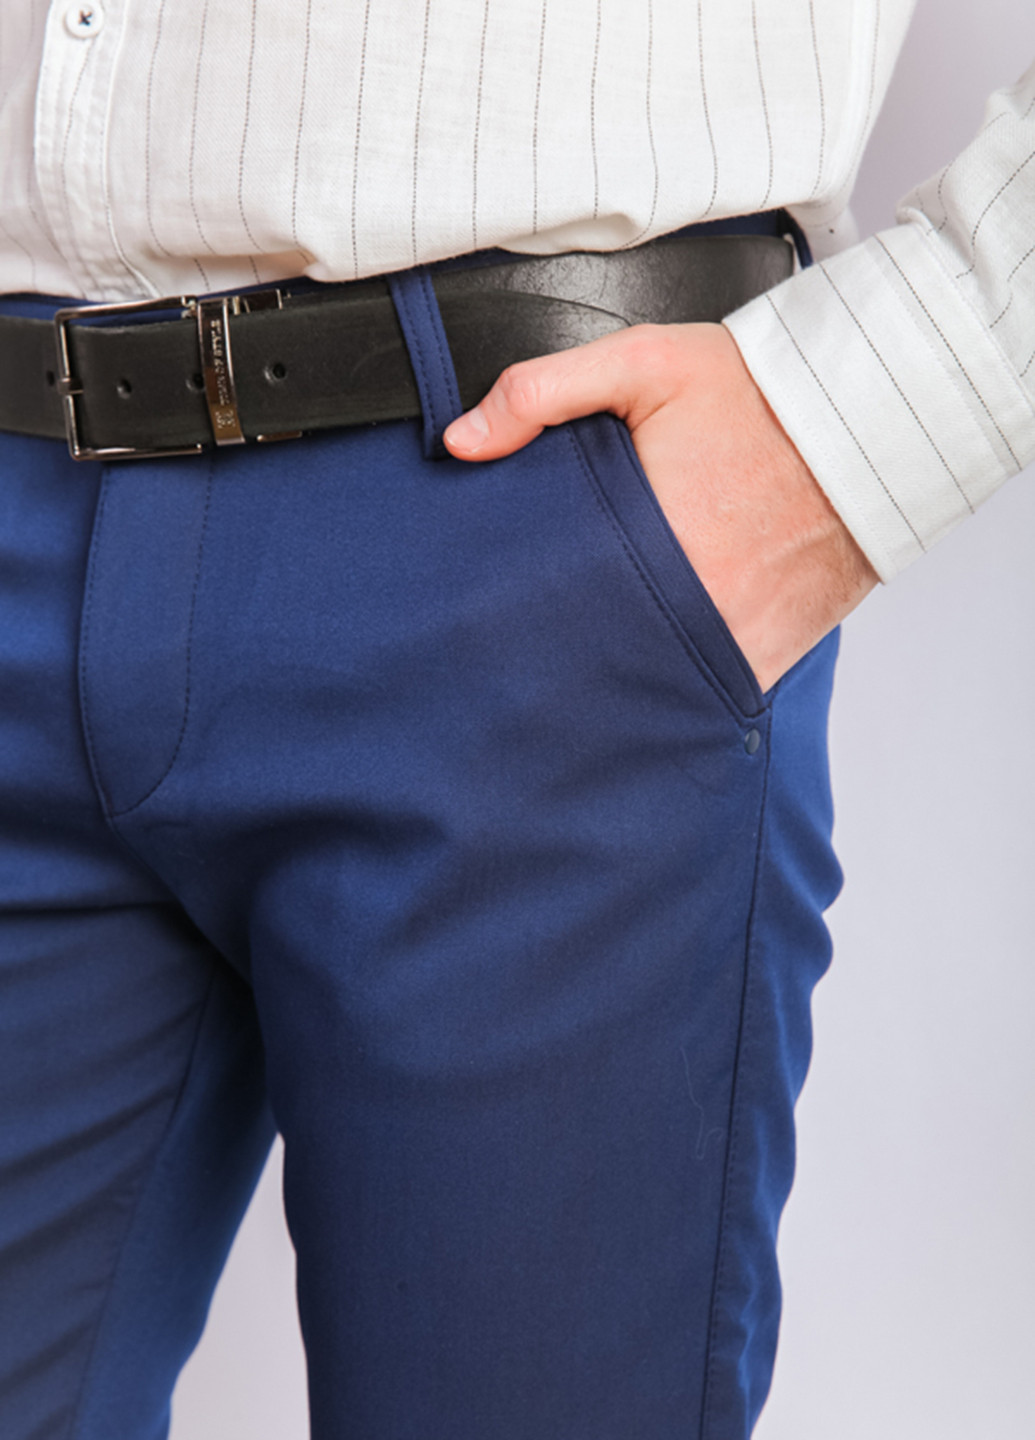 Темно-синие классические демисезонные прямые, классические брюки Time of Style